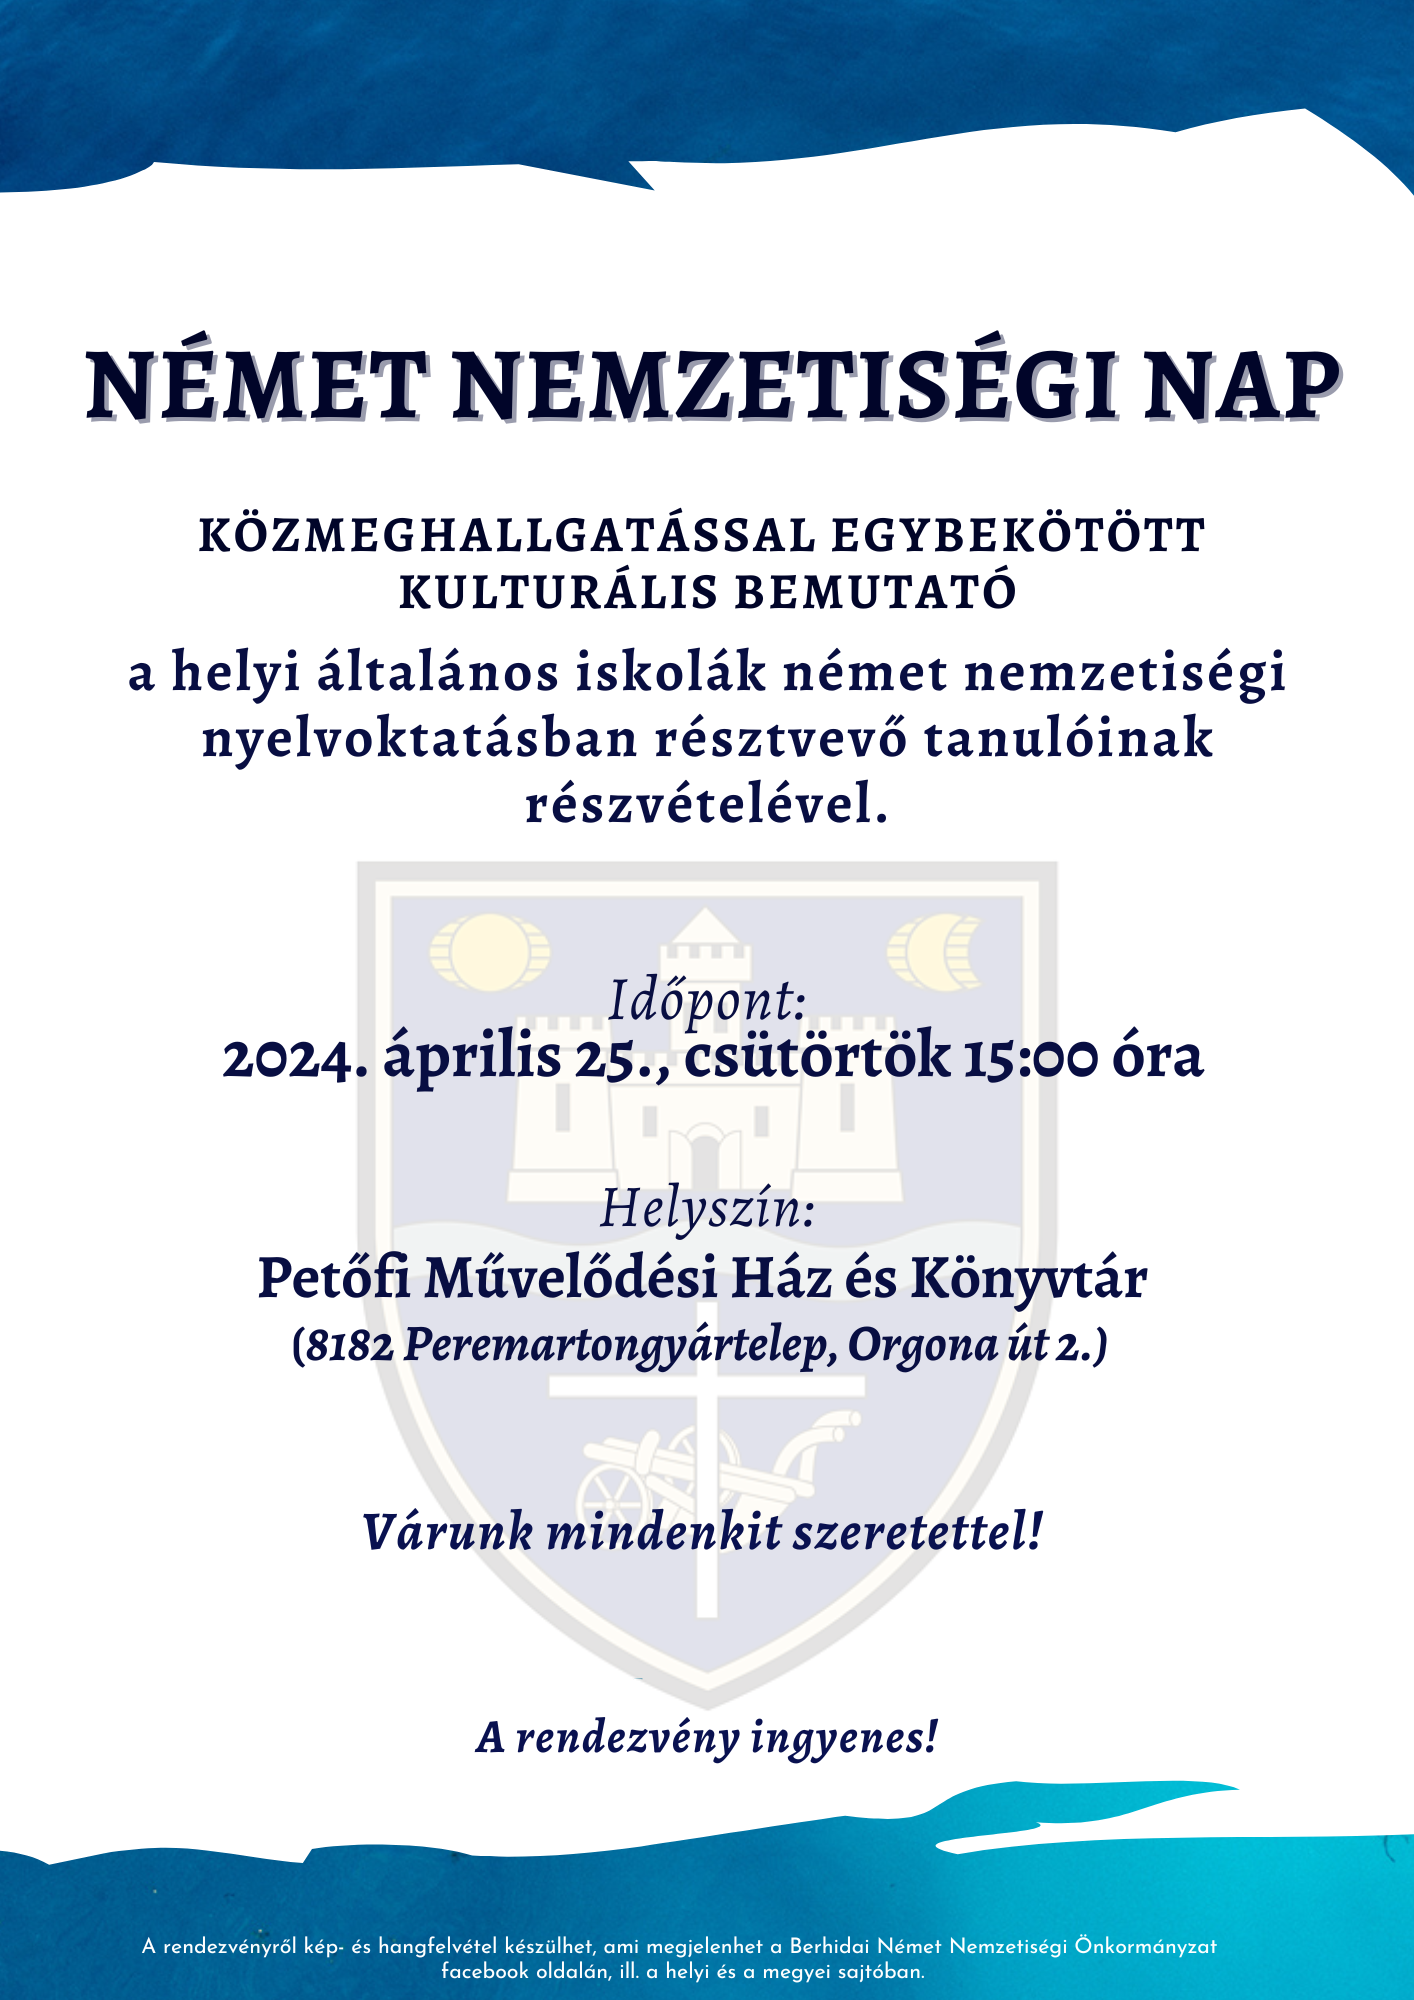 Read more about the article Német nemzetiségi nap